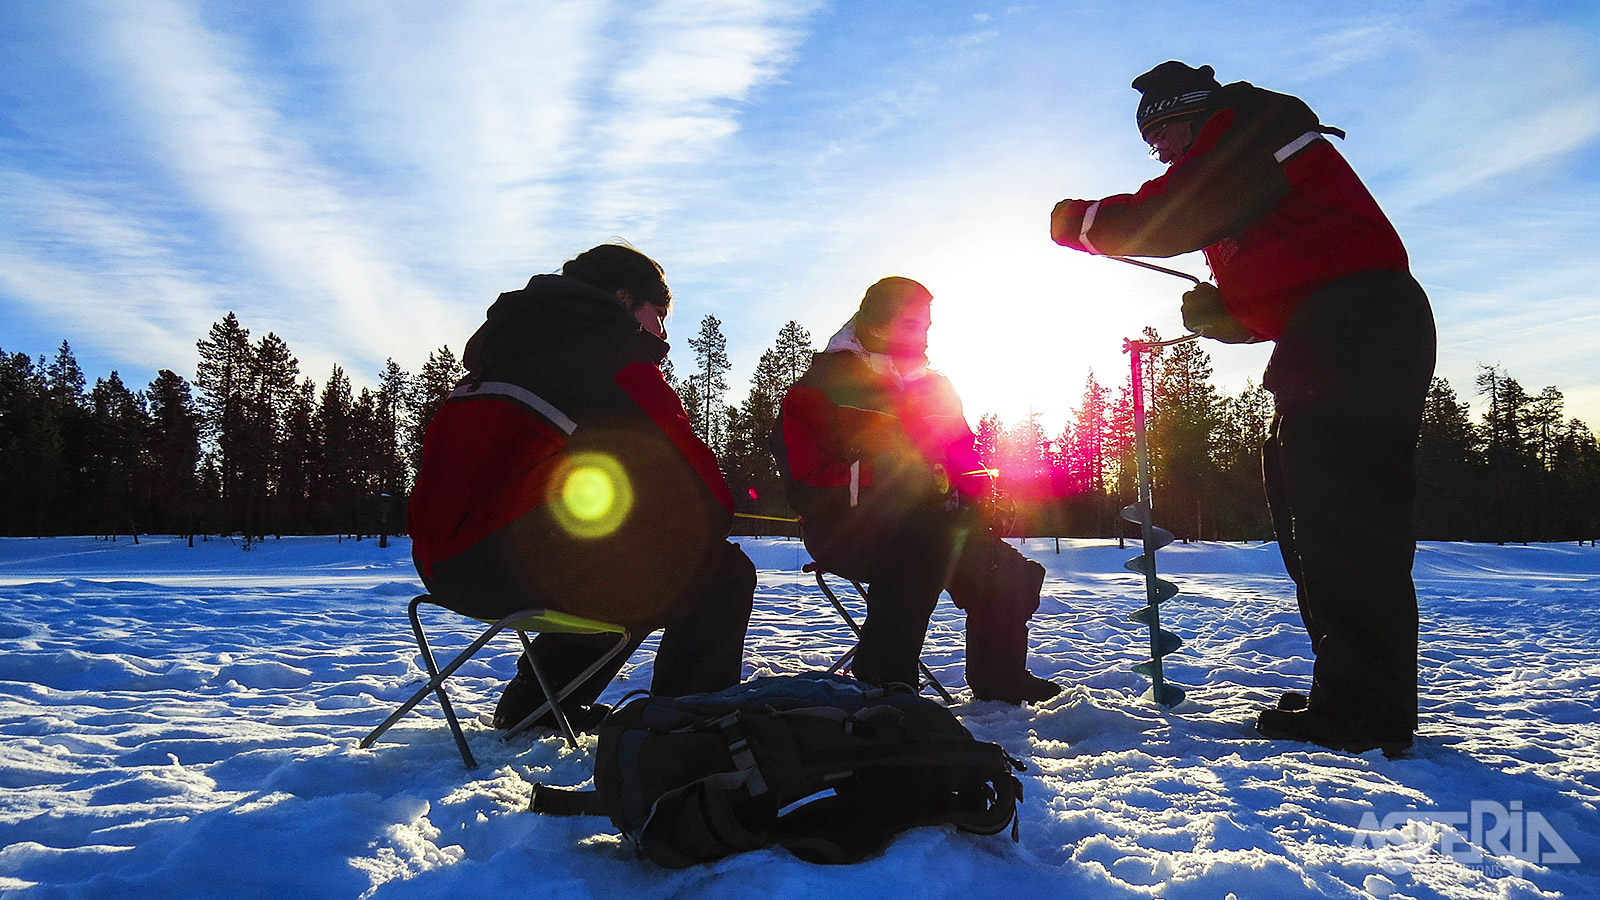 Een partijtje ijsvissen op een bevroren meer, zowat de nationale sport in Finland